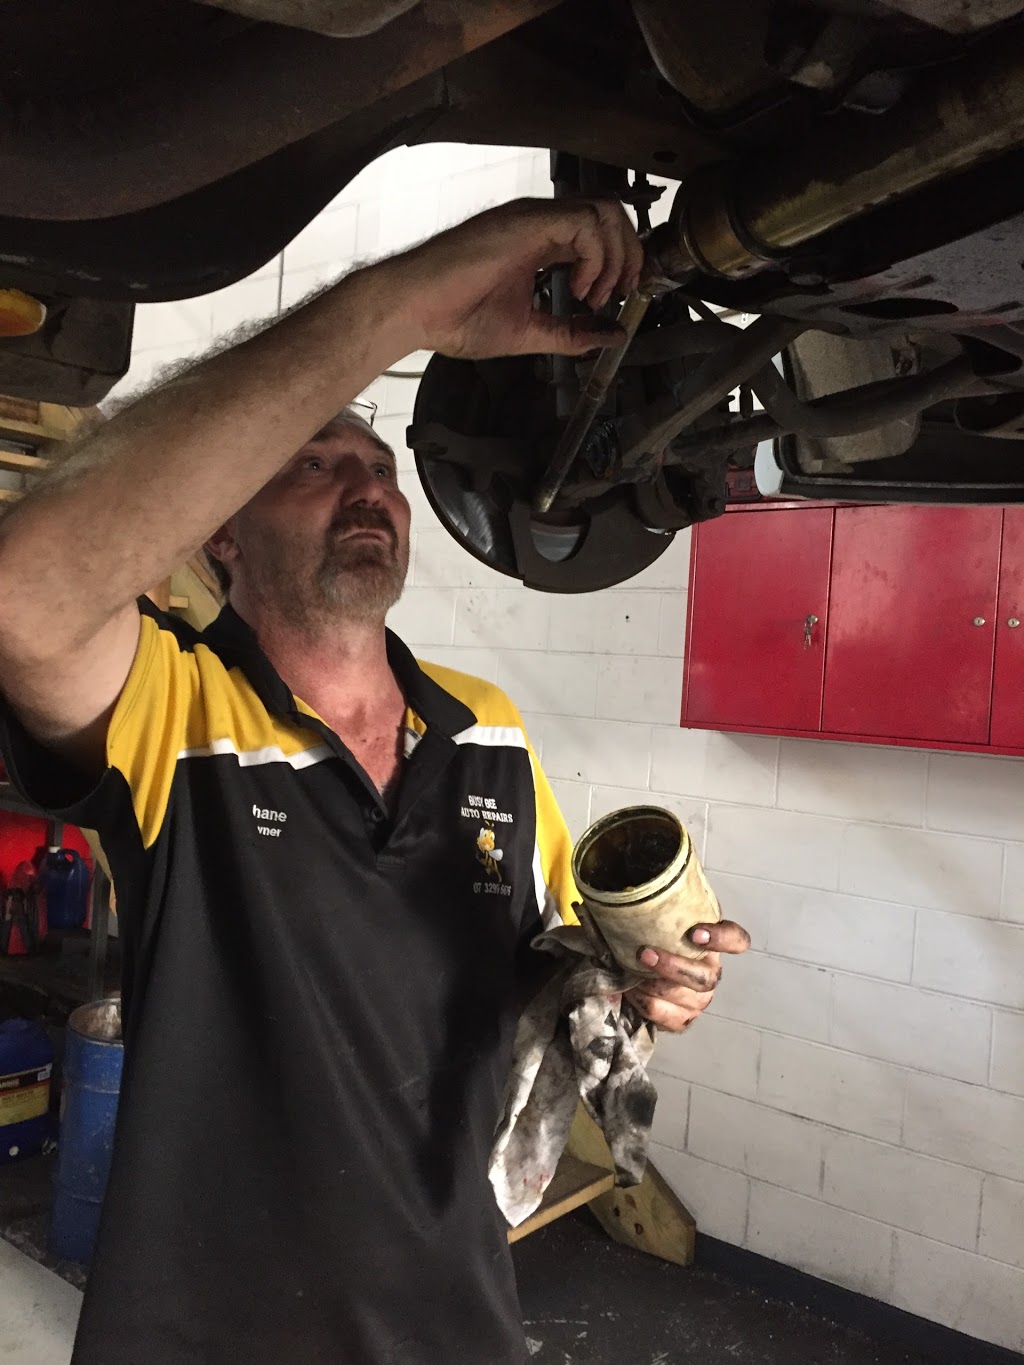 Busy Bee Auto Repairs | car repair | 22 Churchill St, Dalby QLD 4405, Australia | 0746620561 OR +61 7 4662 0561